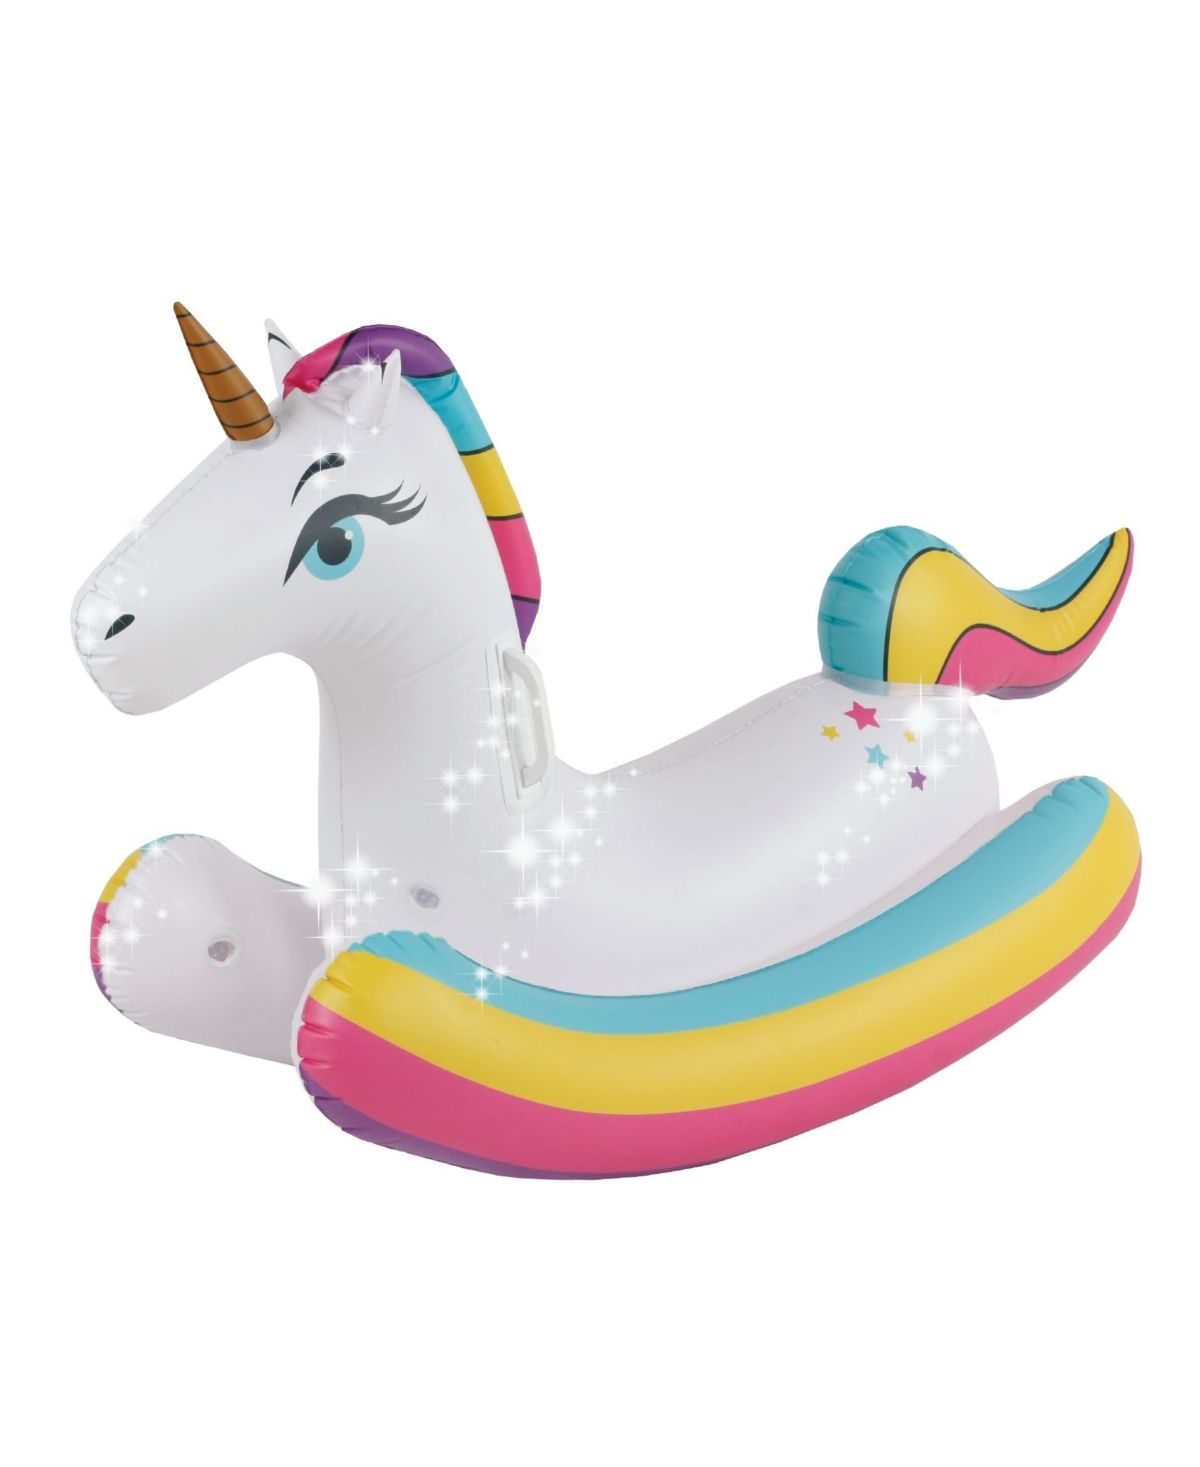 Splash Buddies inflatable Rocking Unicorn Pool Float Ride | Macys (US)